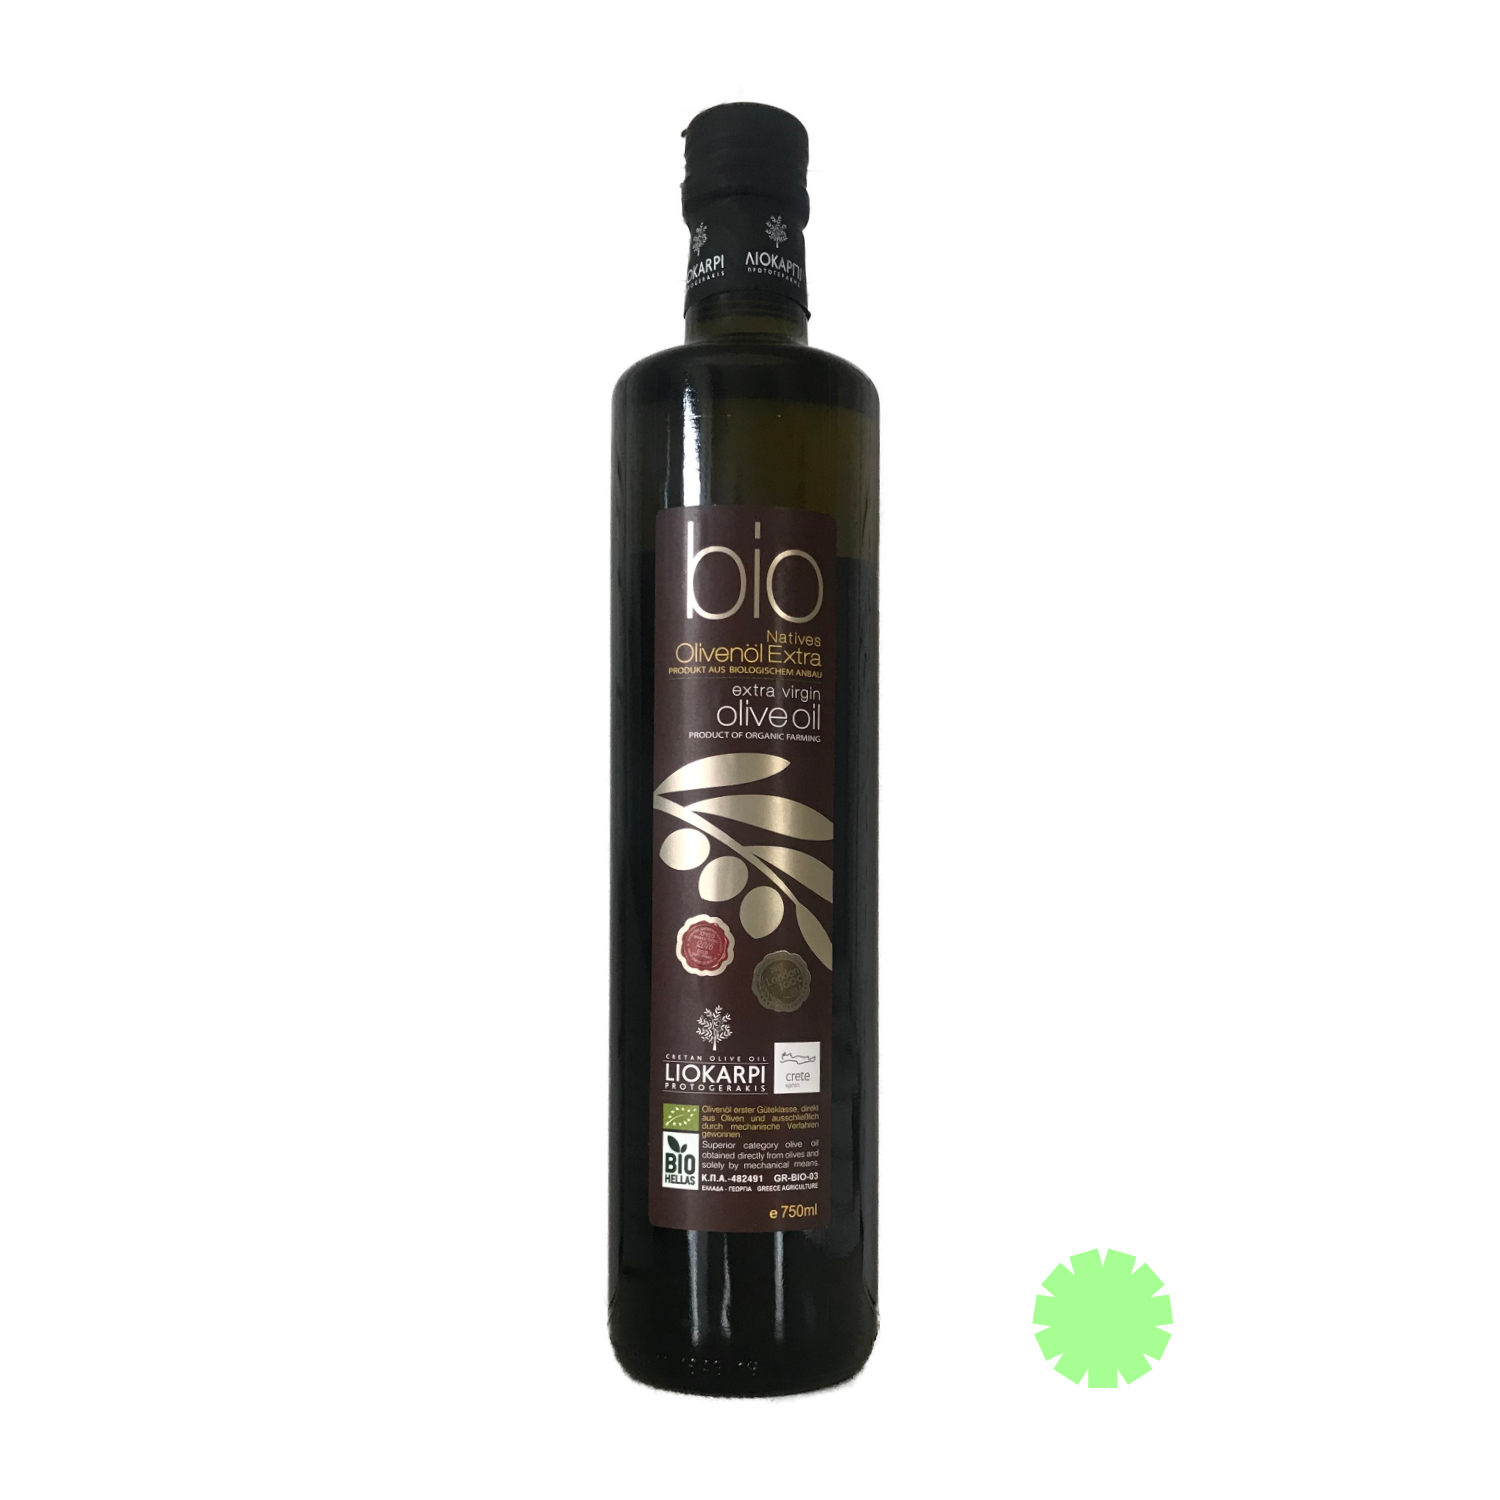 Liokarpi・Kretisches Olivenöl・500 ml